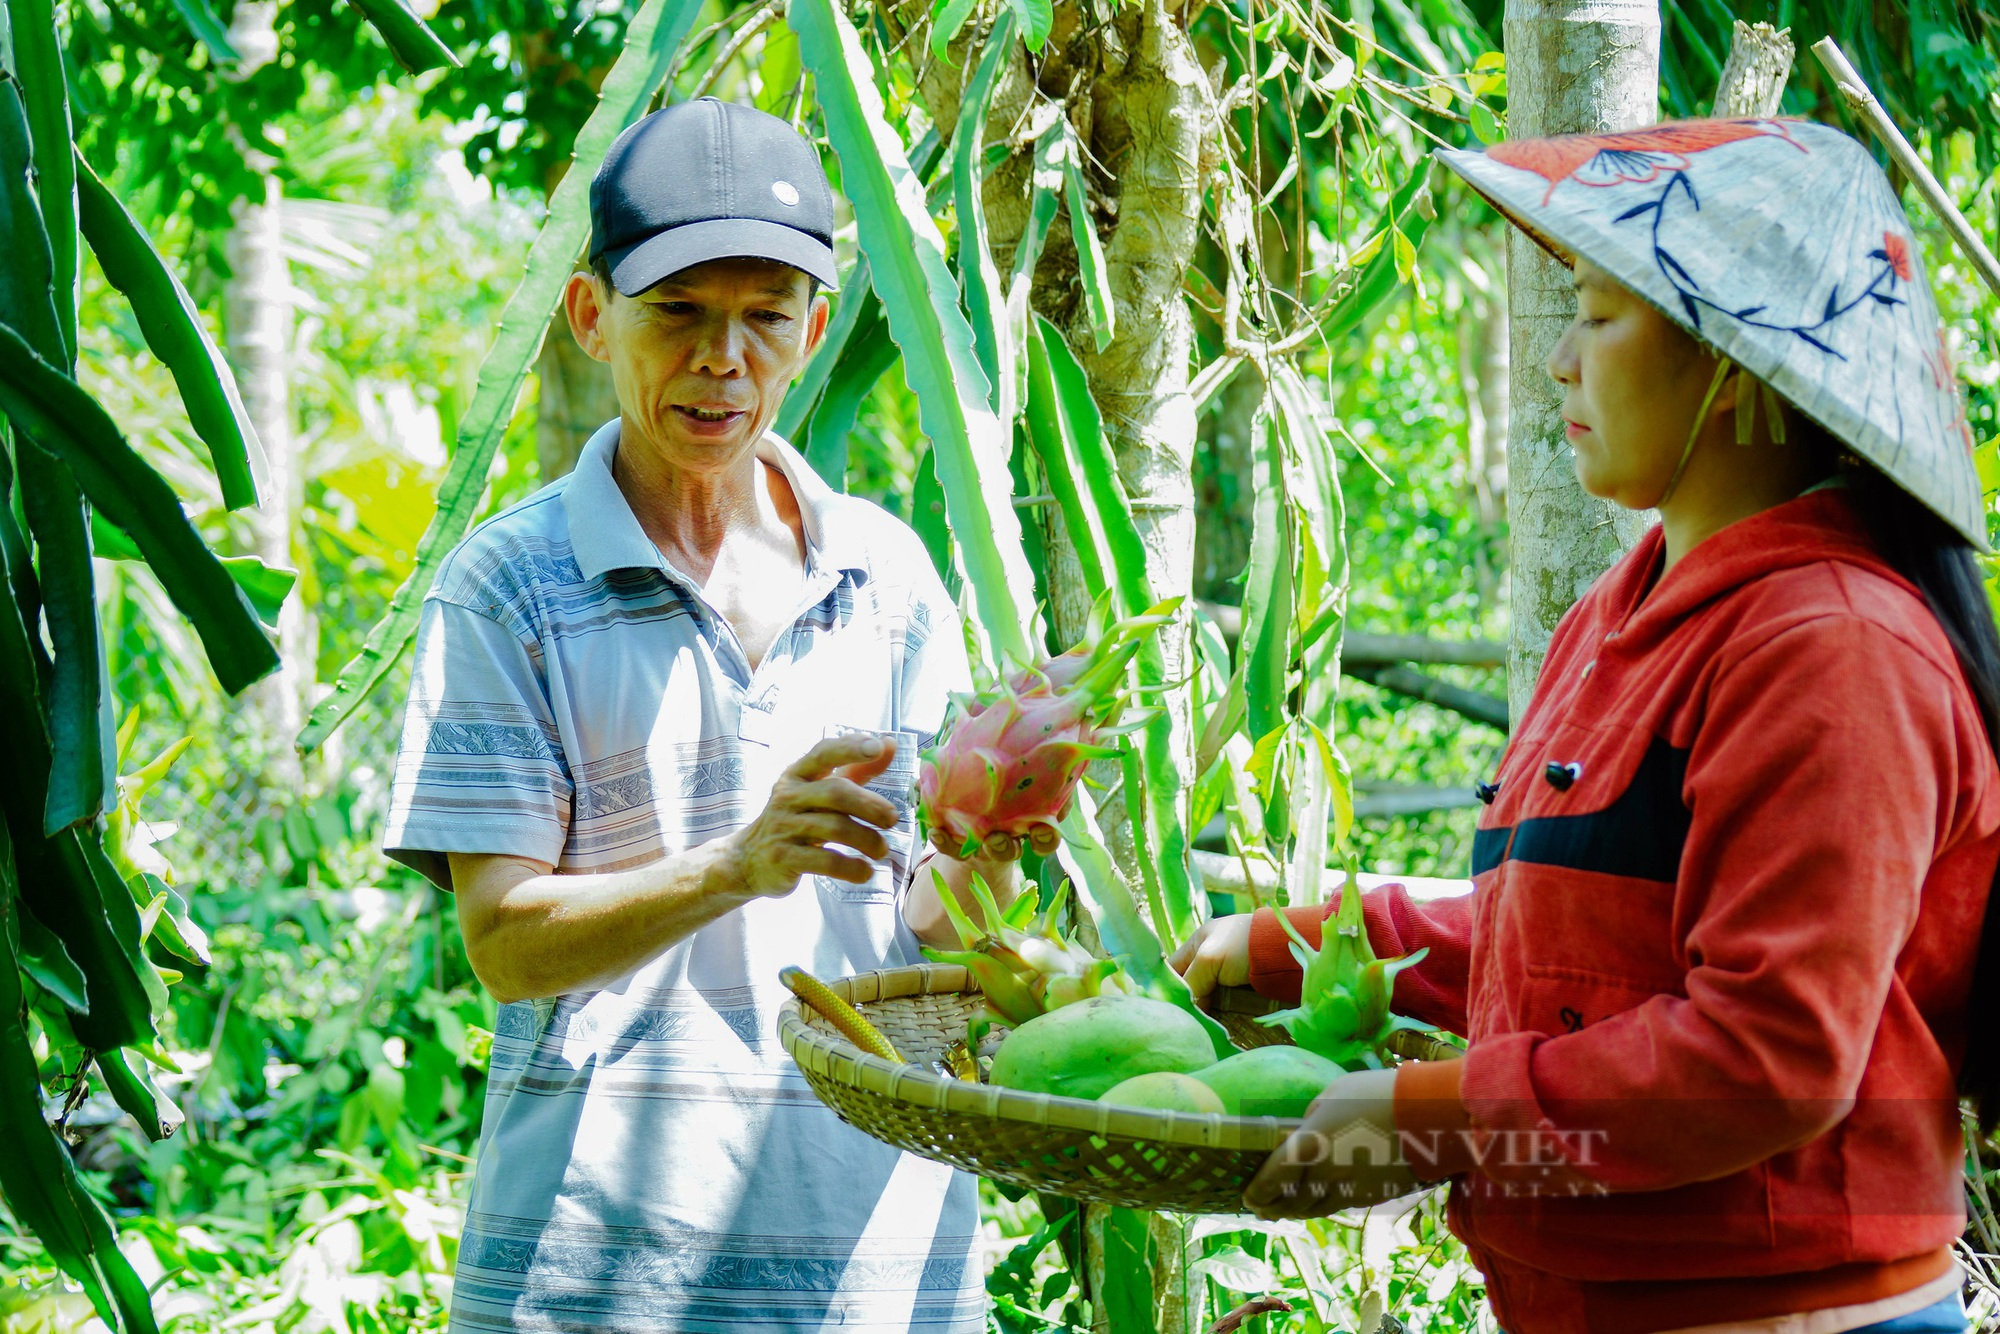 Phó Chủ tịch tỉnh Quảng Nam Hồ Quang Bửu: Hội Nông dân tỉnh là bệ đỡ giúp nông dân làm giàu, thoát nghèo - Ảnh 3.